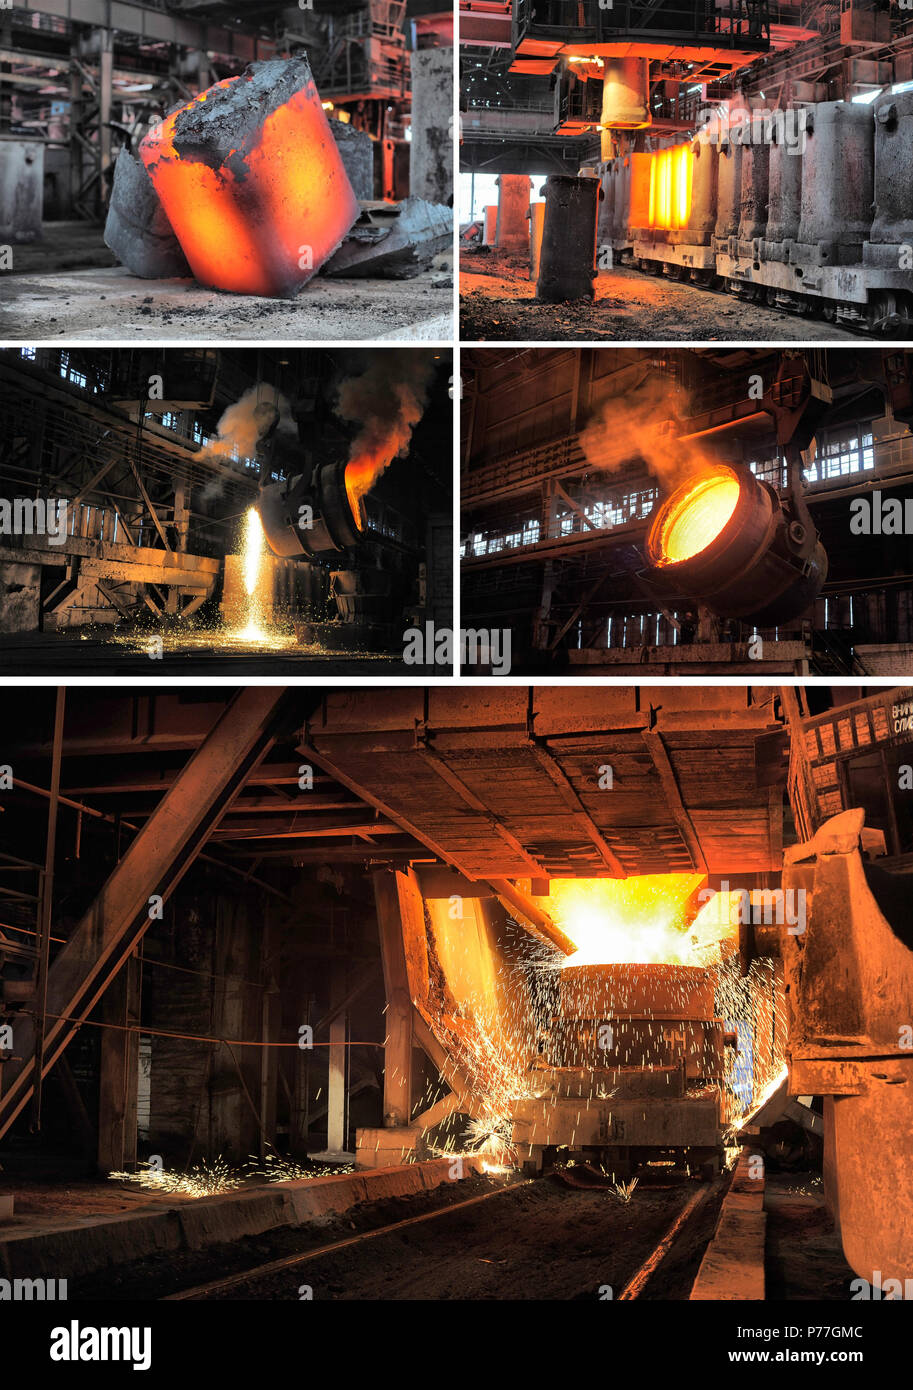 Jeu d'images de l'industrie métallurgique Banque D'Images